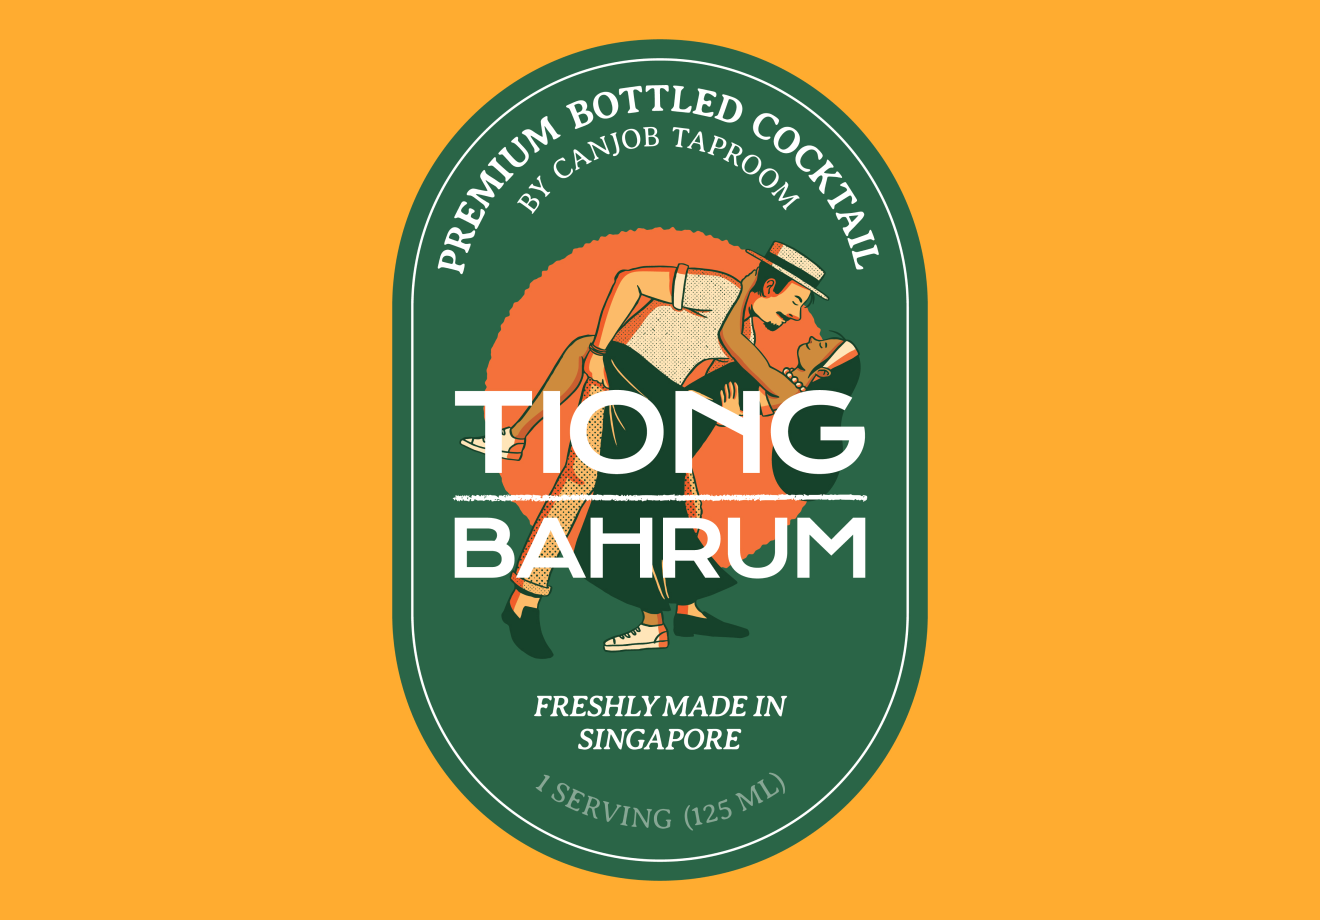 Canjob Taproom - Tiong Bahrum Bottled Cocktail Label